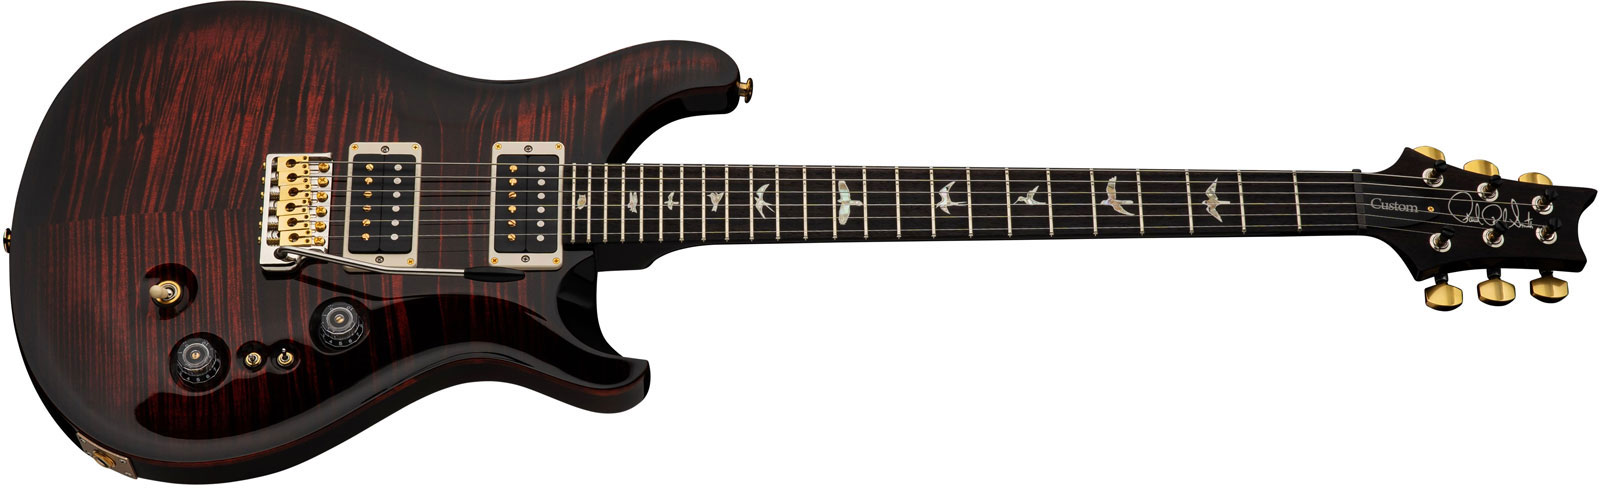 Prs Custom 24-08 Usa 2h Trem Rw - Fire Smokeburst - Guitarra eléctrica de doble corte. - Variation 1